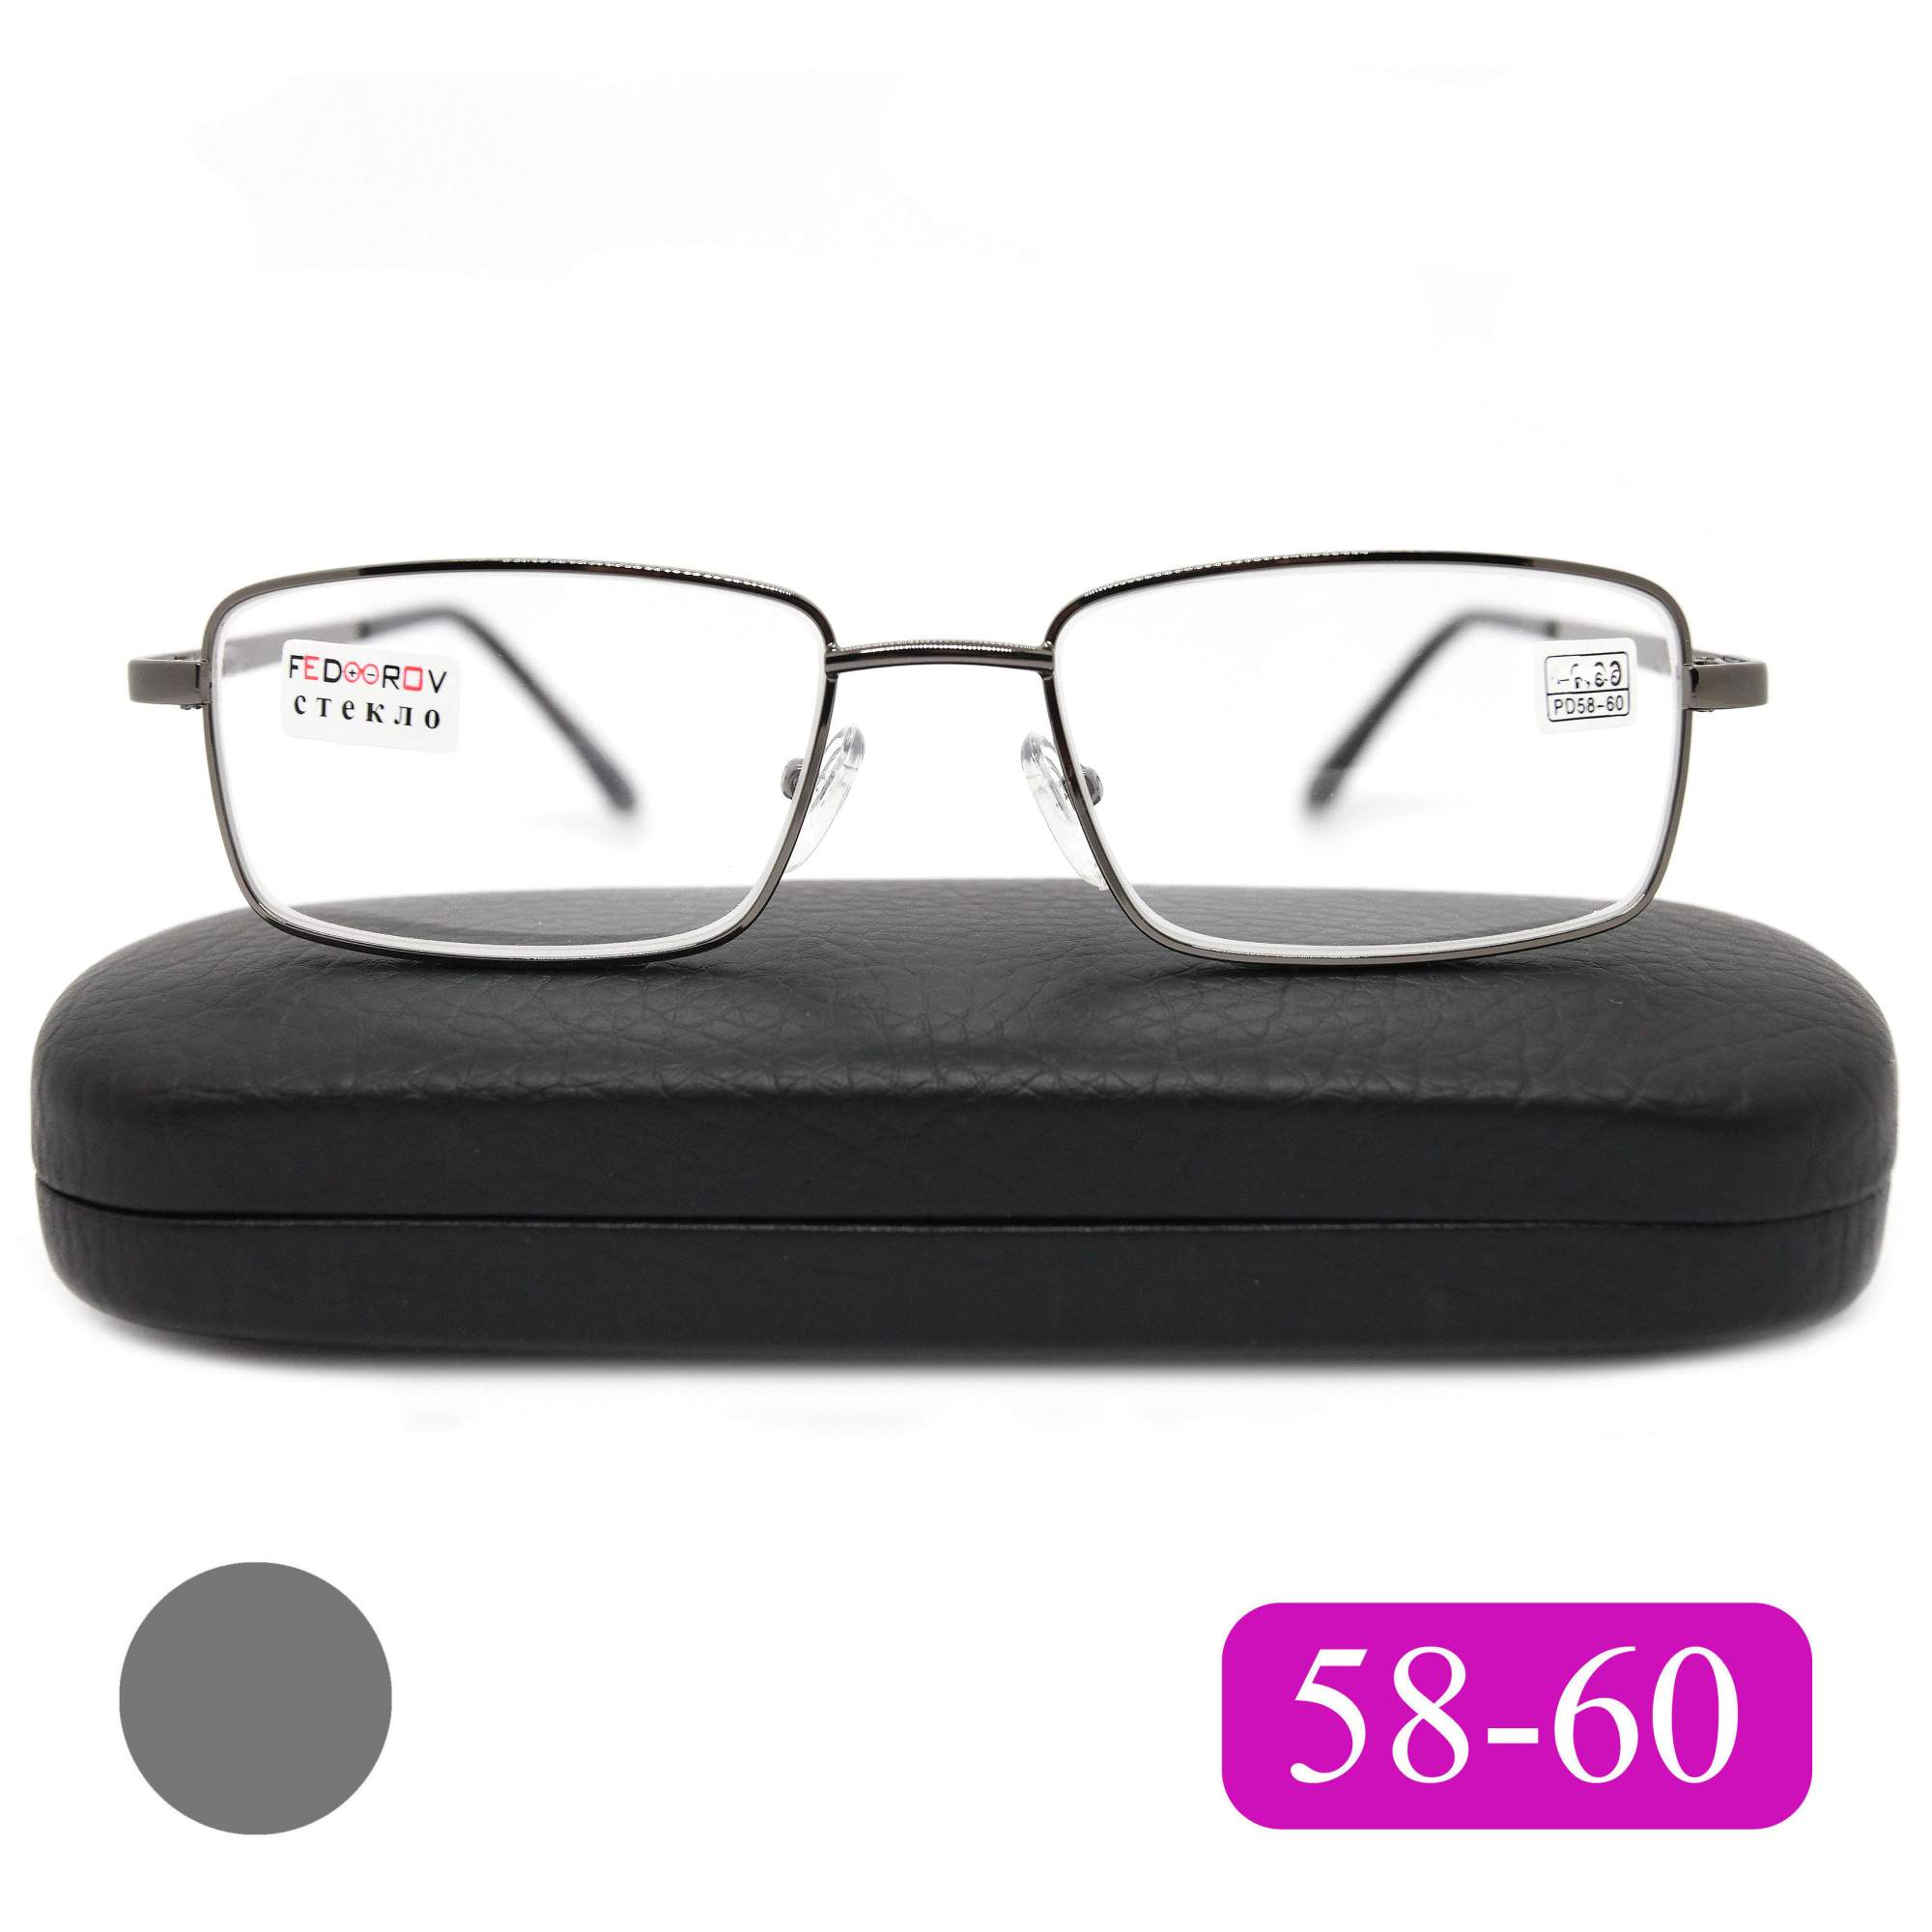 Готовые очки Fedrov 569, со стеклянной линзой, +3,50, c футляром, цвет серый, РЦ 58-60